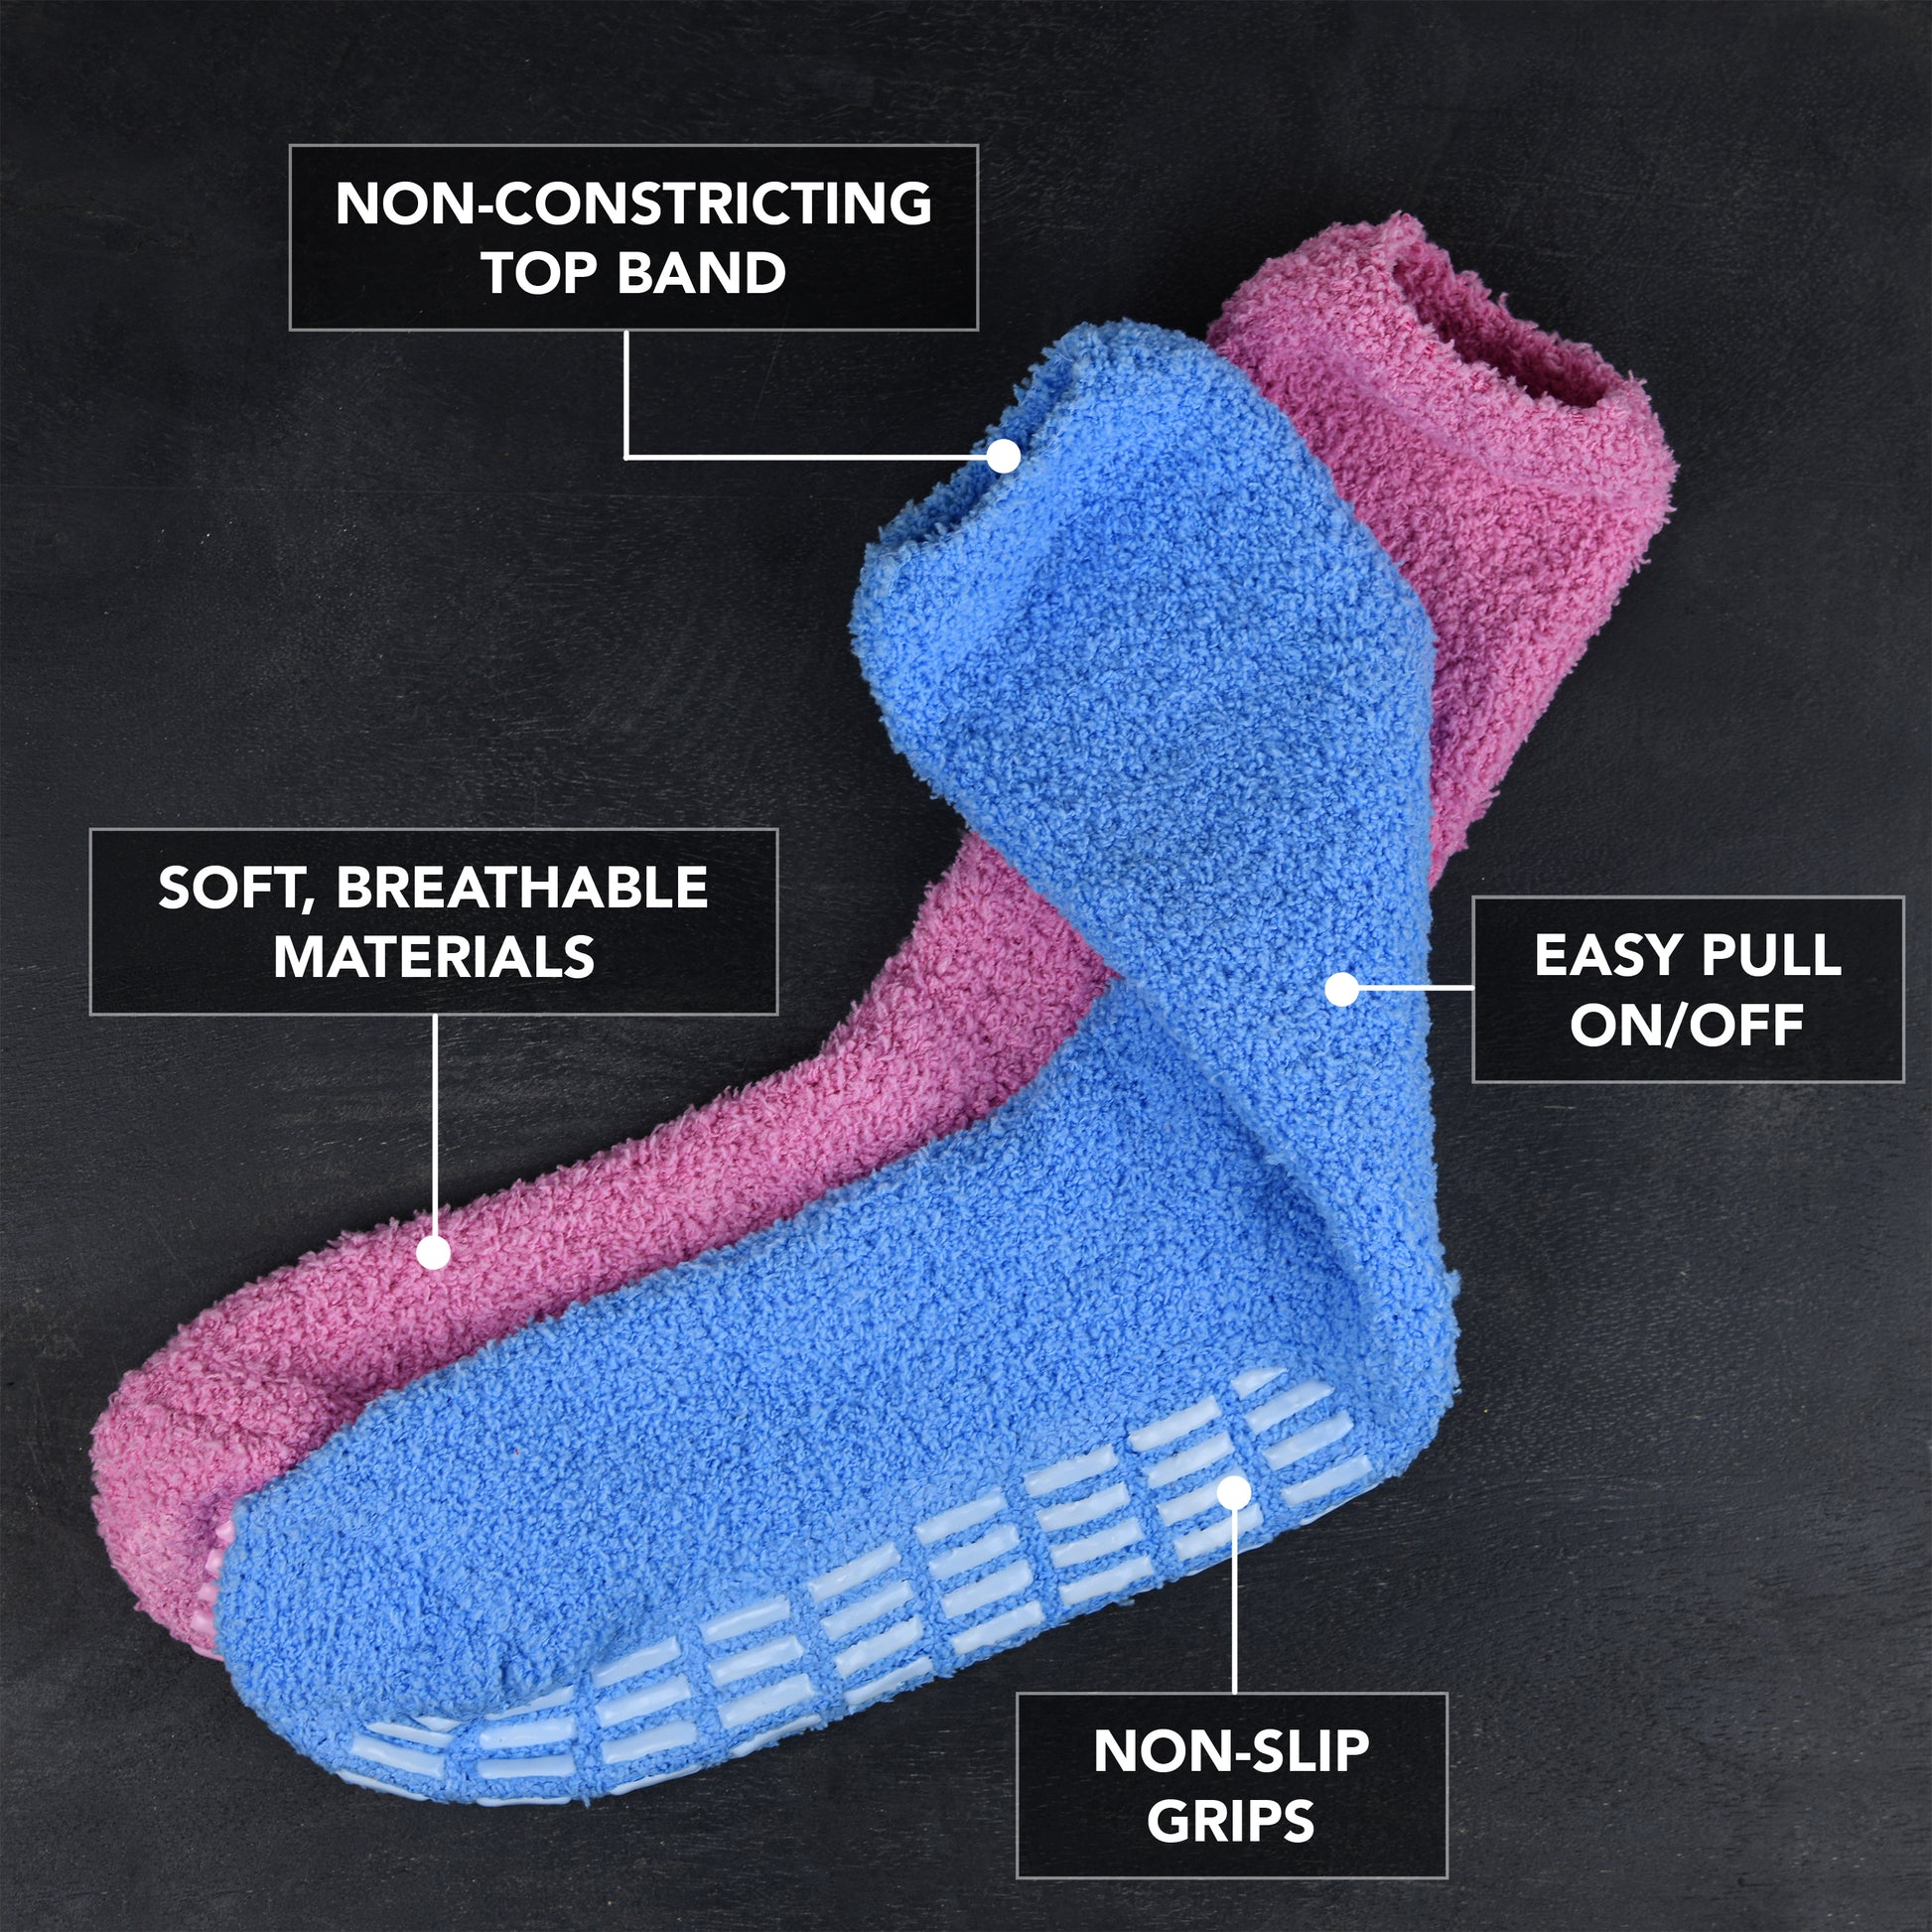 Cheap Hospital Socks for Women Grip Socks for Women Socks with